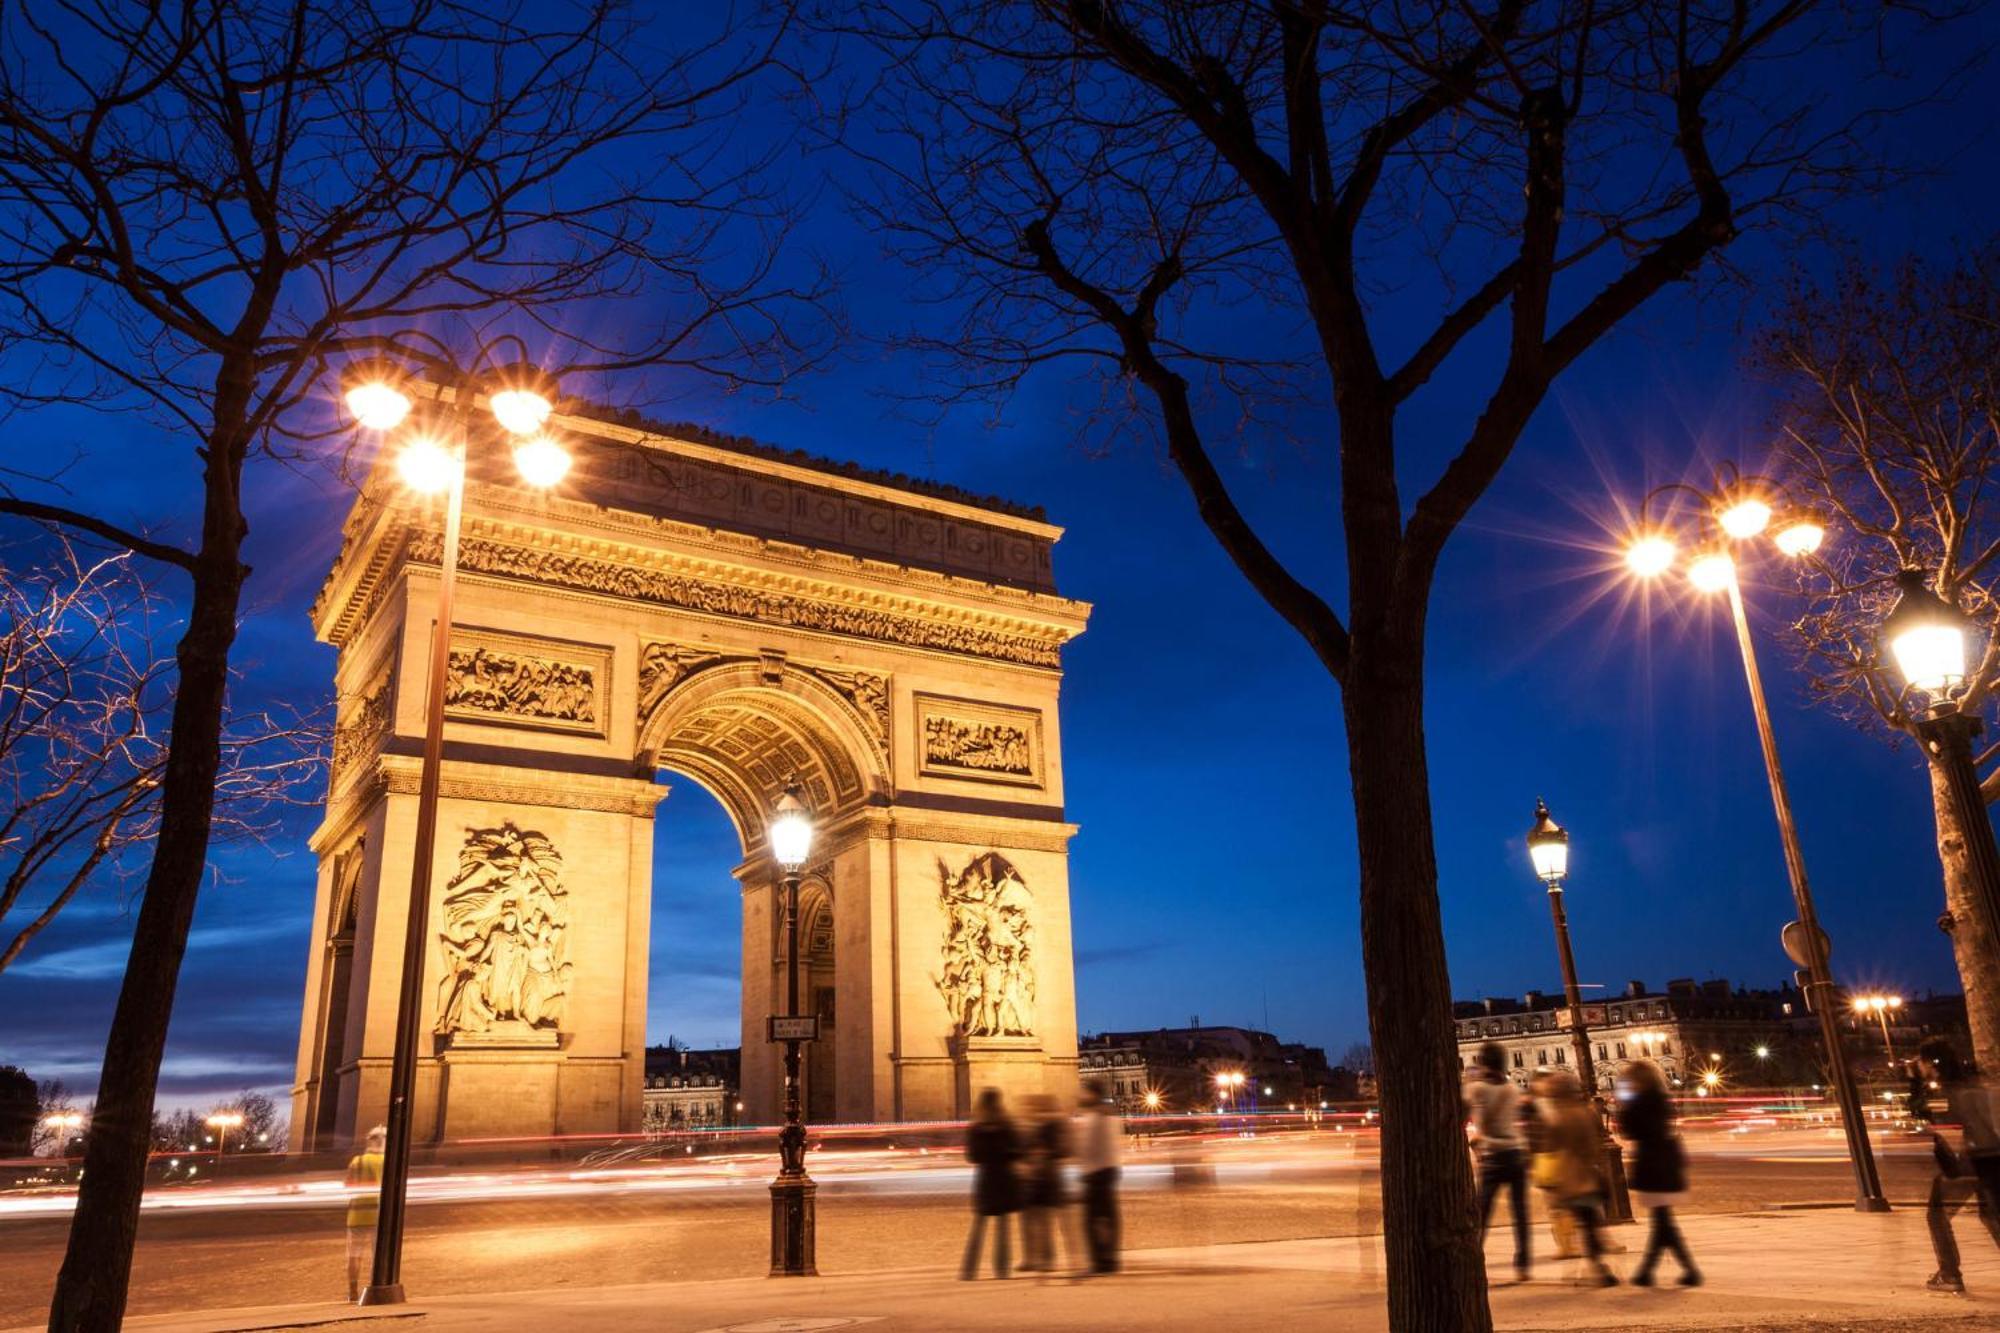 Voco Paris - Porte De Clichy, An Ihg Hotel Екстер'єр фото